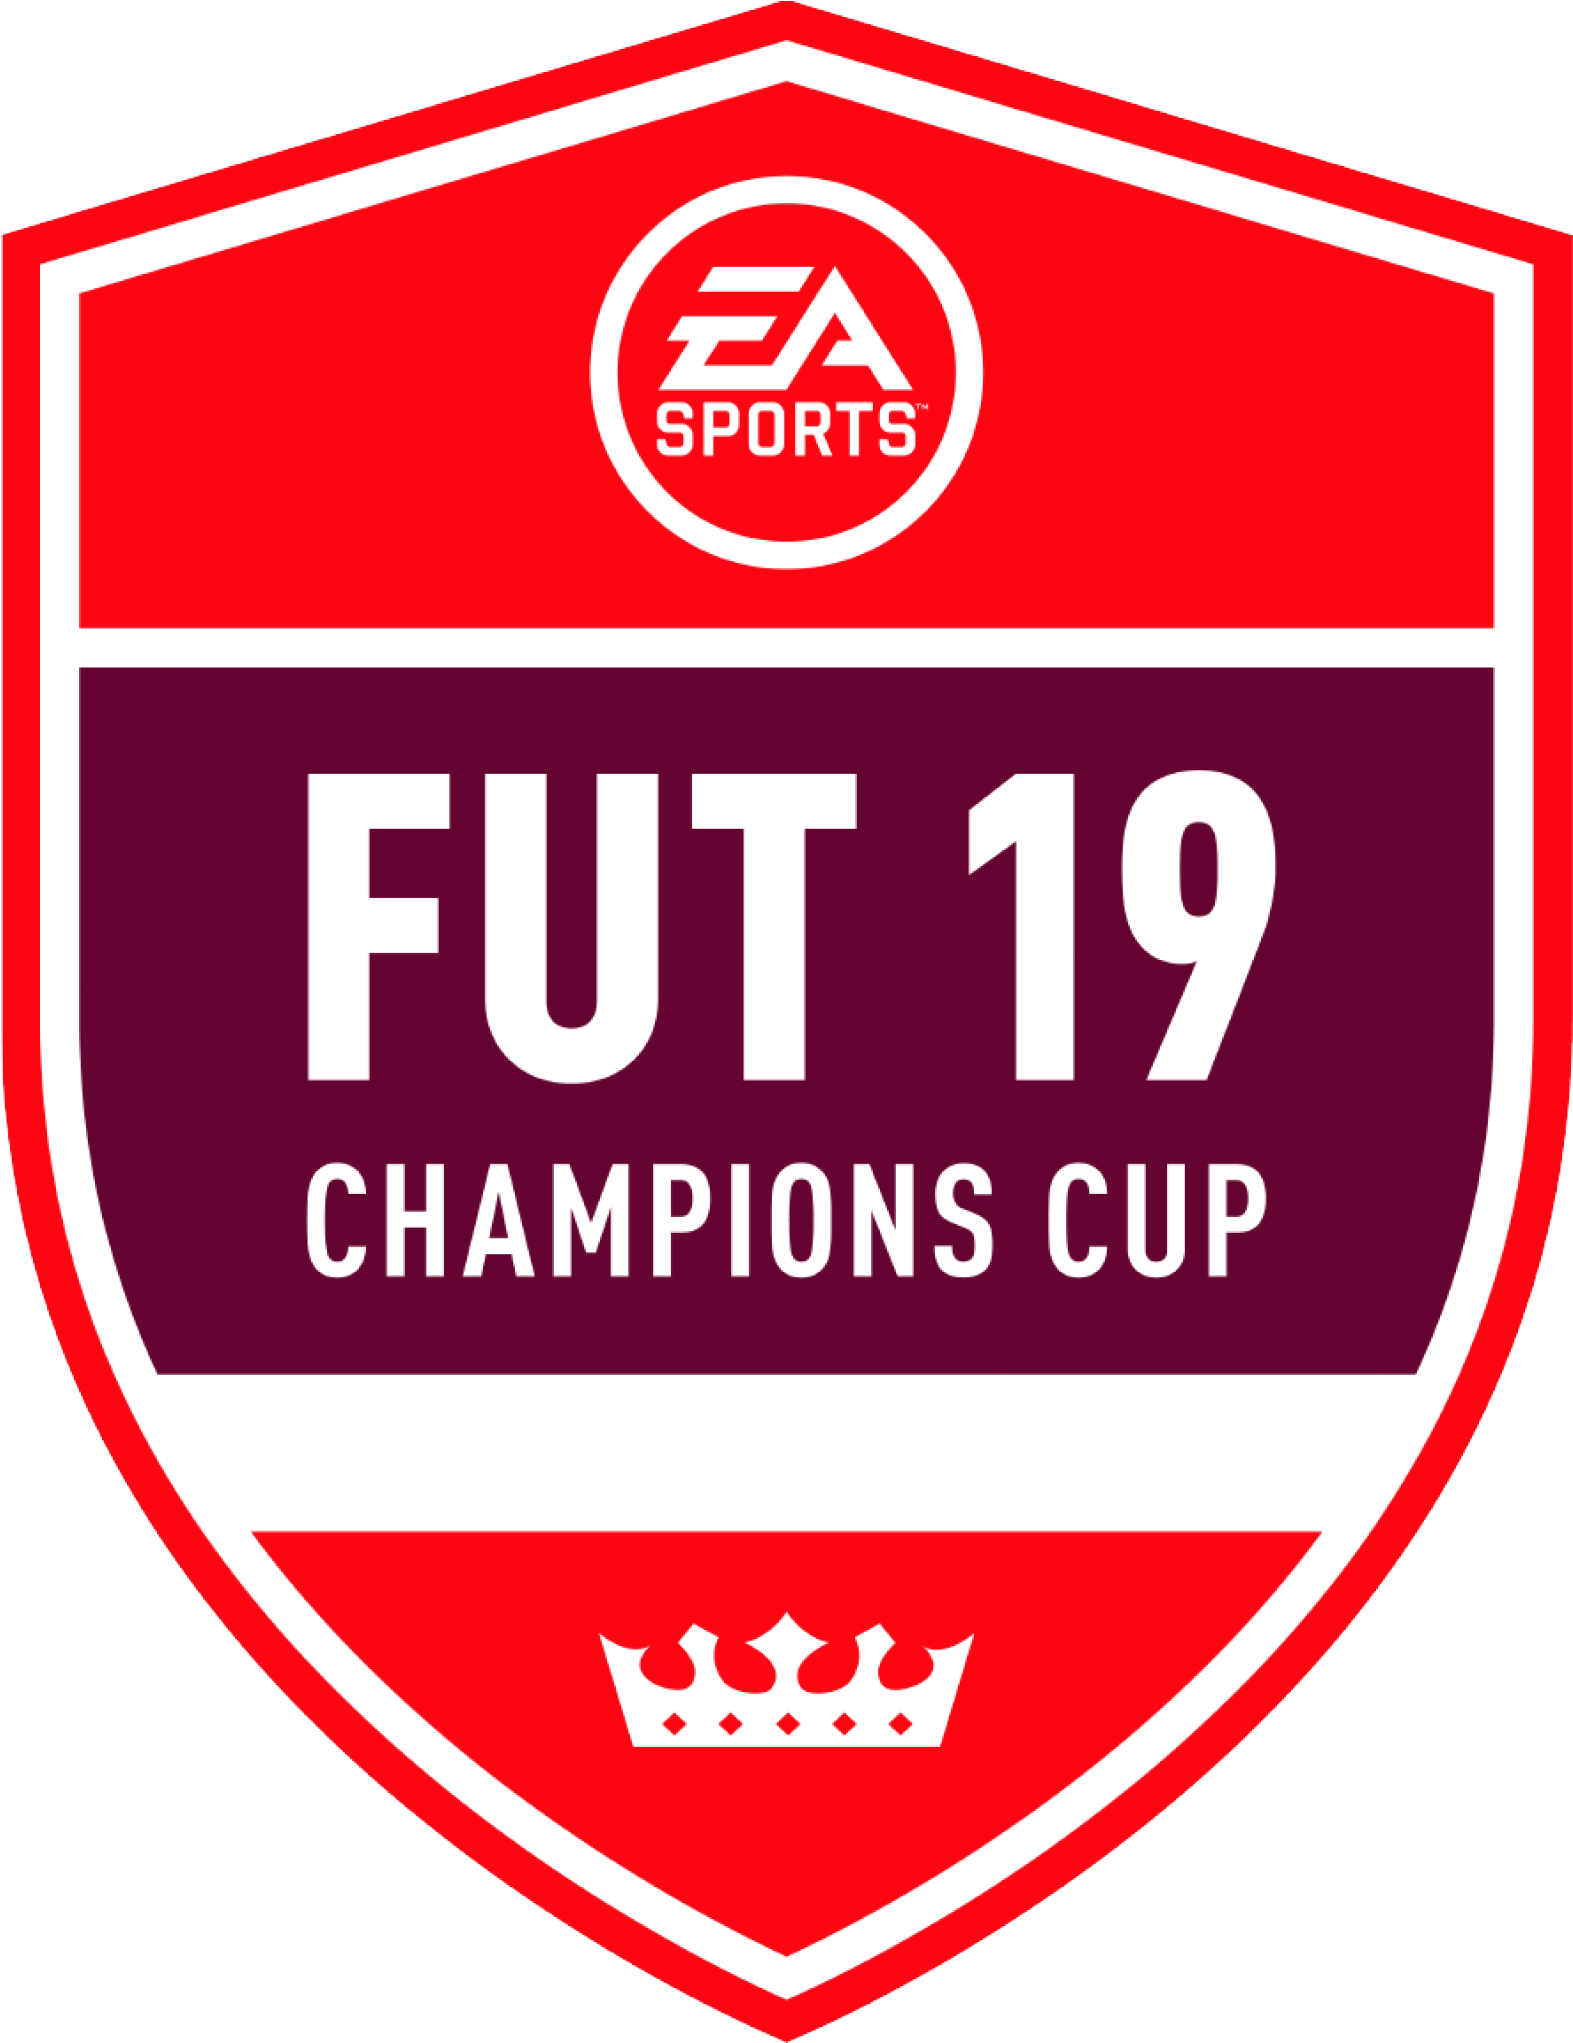 April Fut Cup - Fut 19 Champions Cup Clipart (1581x2042), Png Download